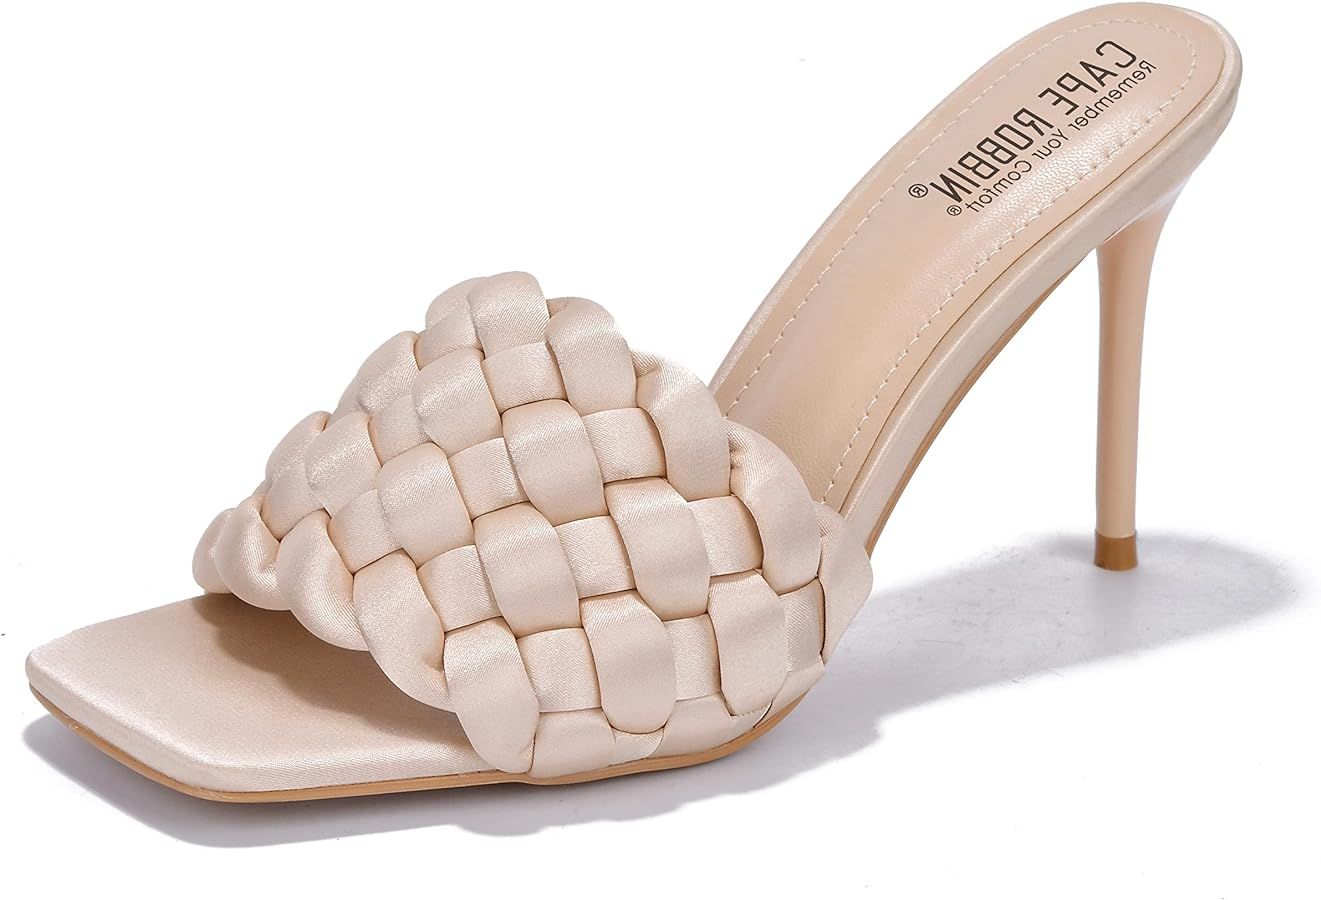 Cape Robbin Miella Stiletto Heels for Women - Square Open Toe Stiletto Heels with Upper Braided S... | Amazon (US)